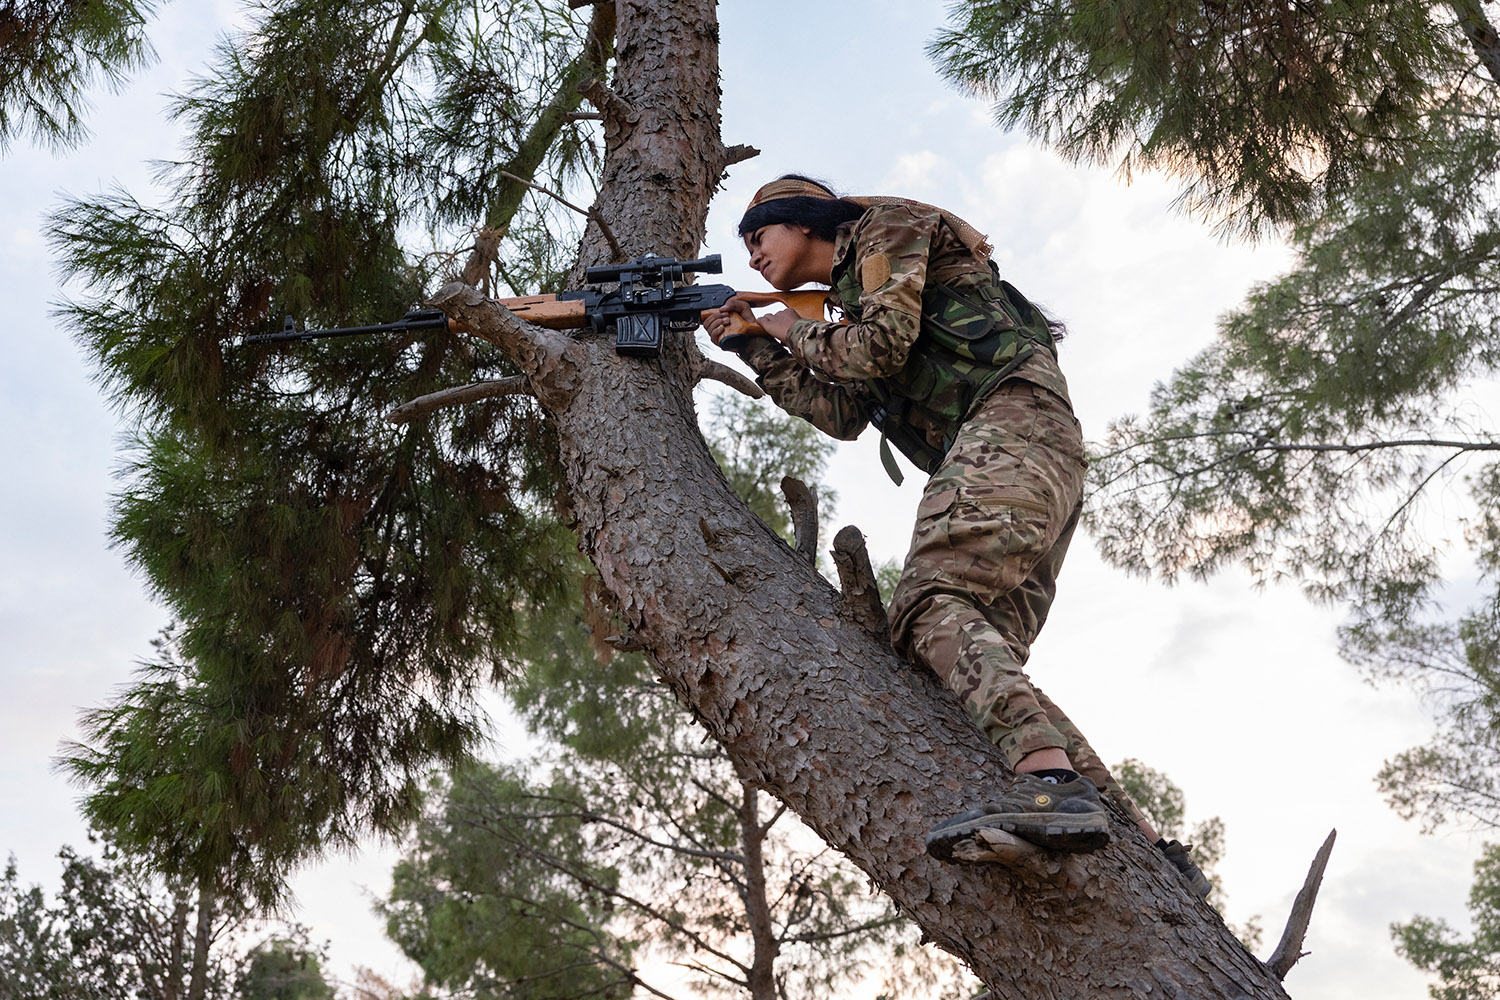 Femme soldat kurde dans un arme, elle vise à travers son arme posée sur une branche.